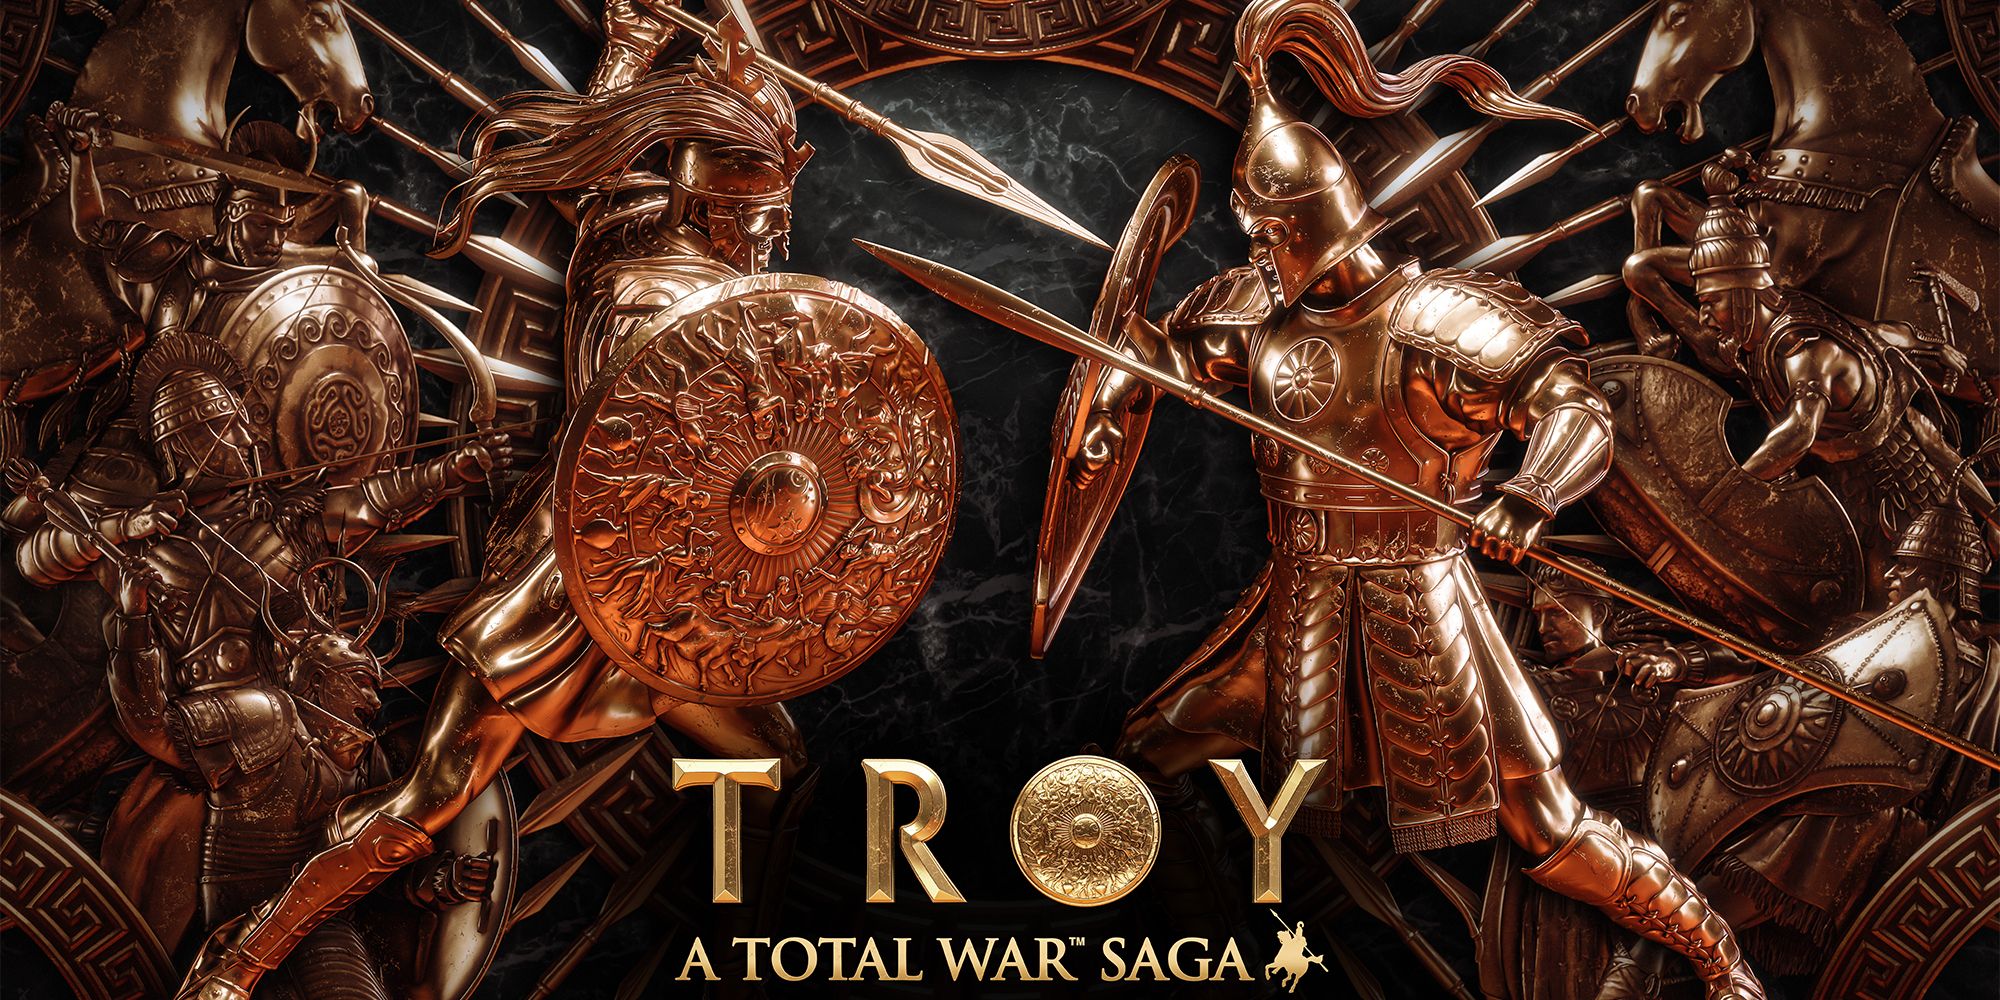 a total war saga troy mythos